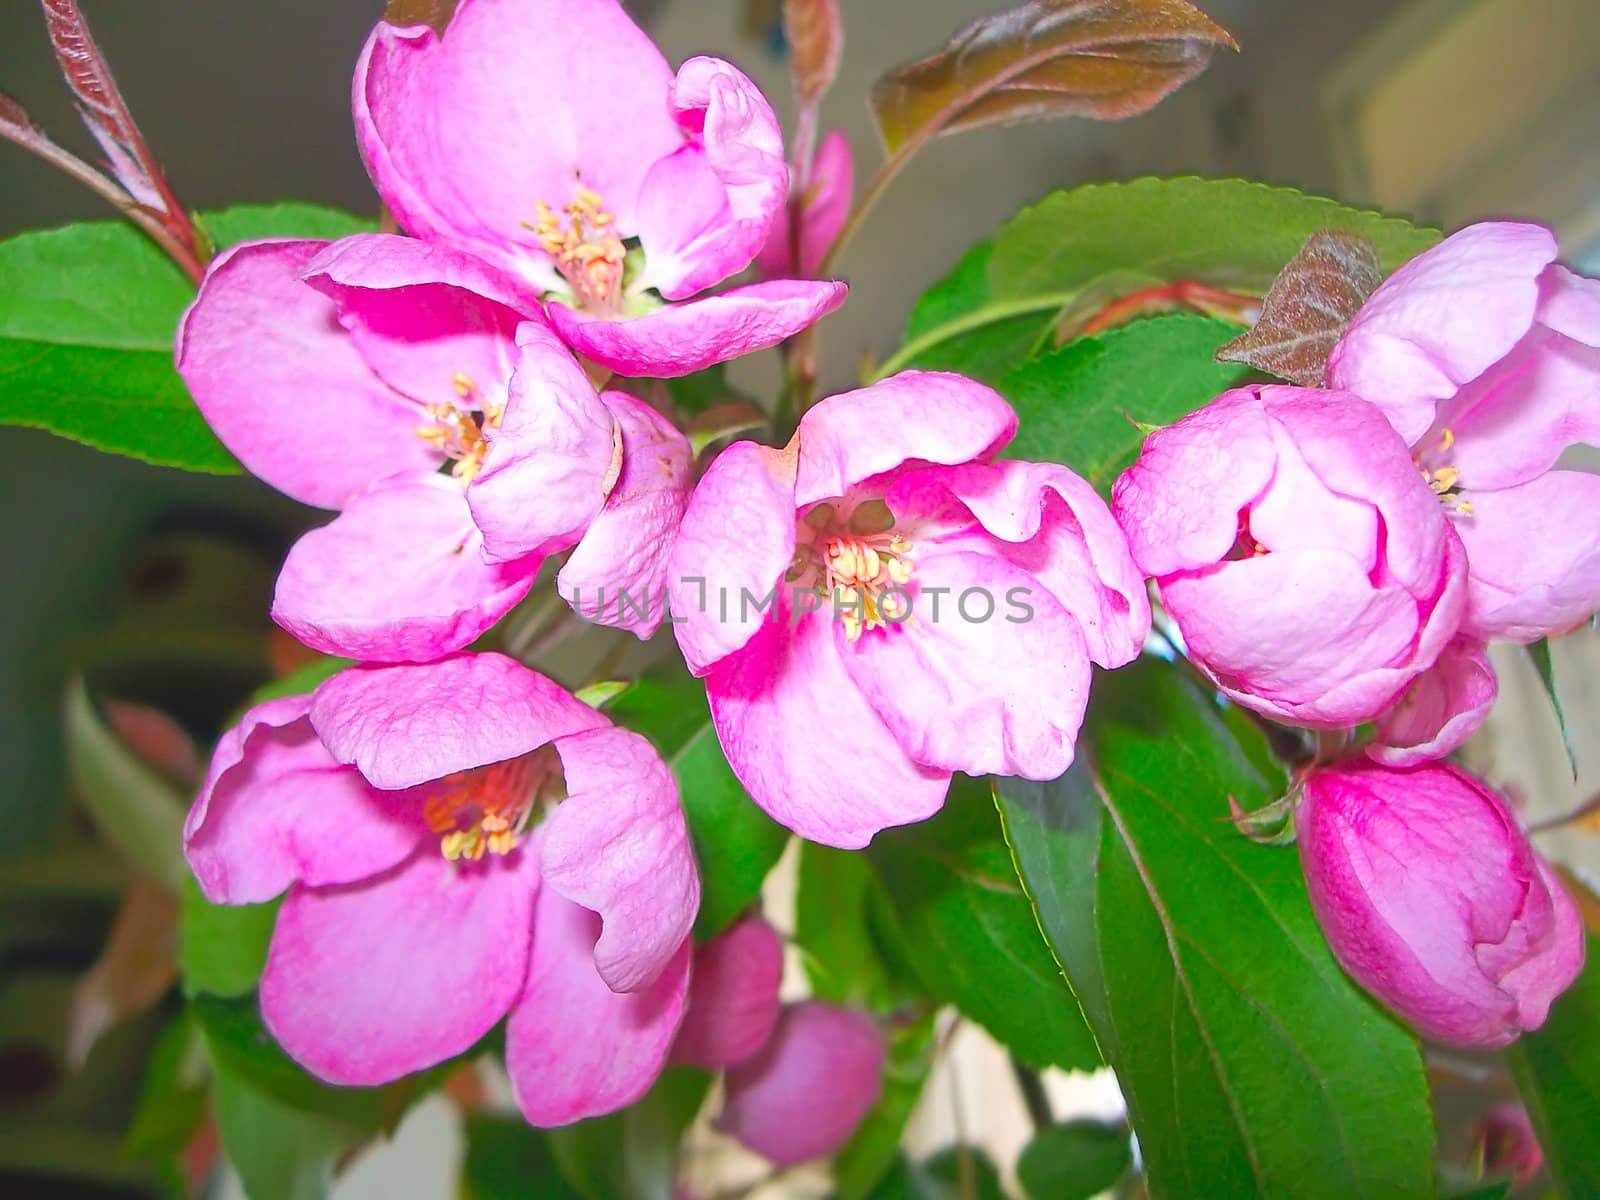 Apple blossom by zhannaprokopeva